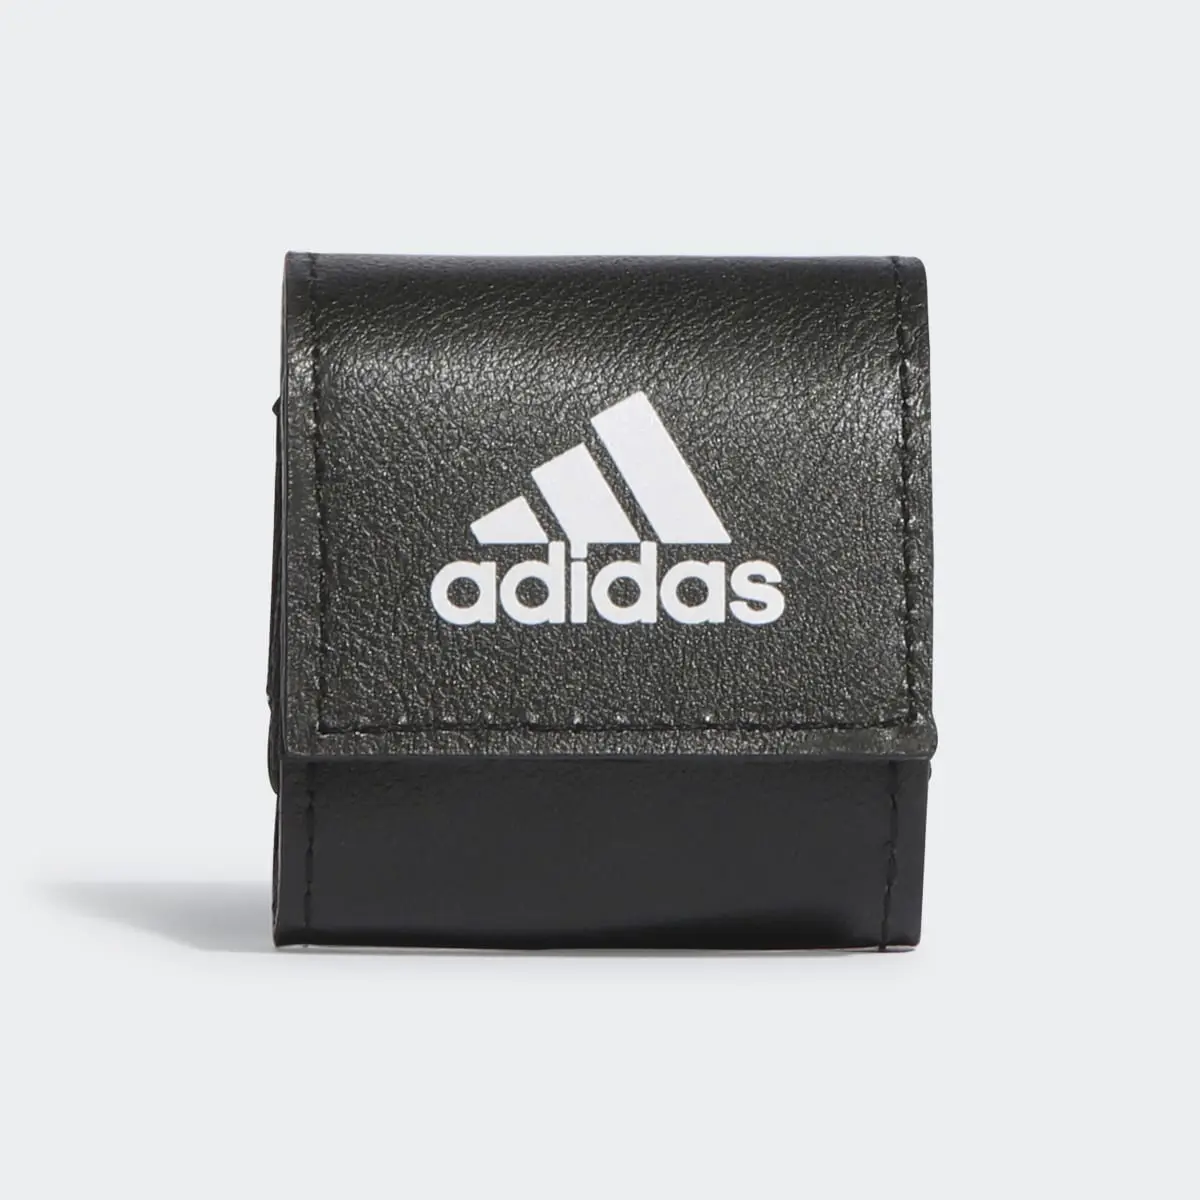 Adidas Tasca Essentials Tiny Earbud. 2